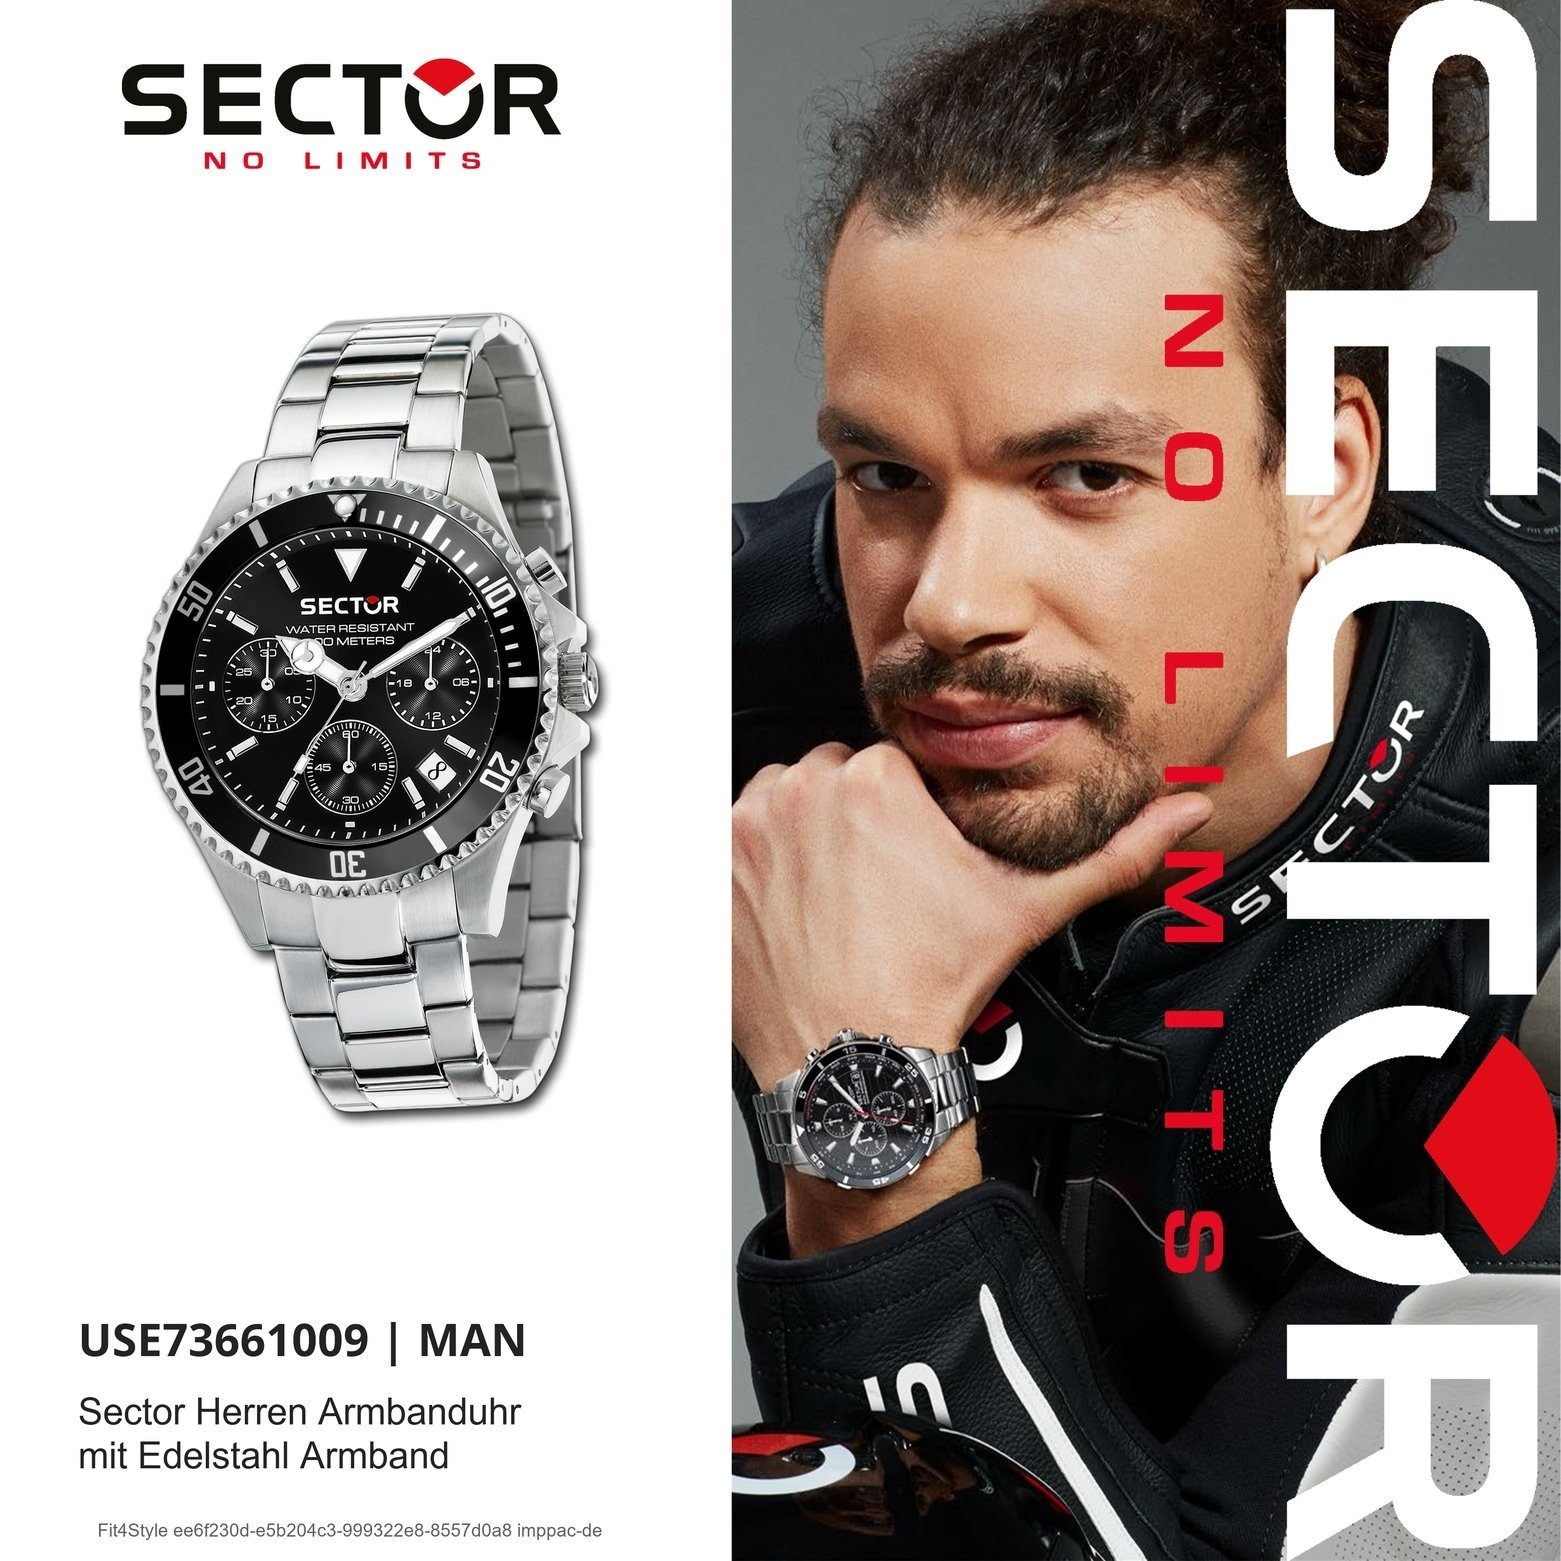 silber, Herren Sector Armbanduhr Edelstahlarmband Armbanduhr Chrono, Sector Fashion groß rund, Chronograph Herren (42mm),